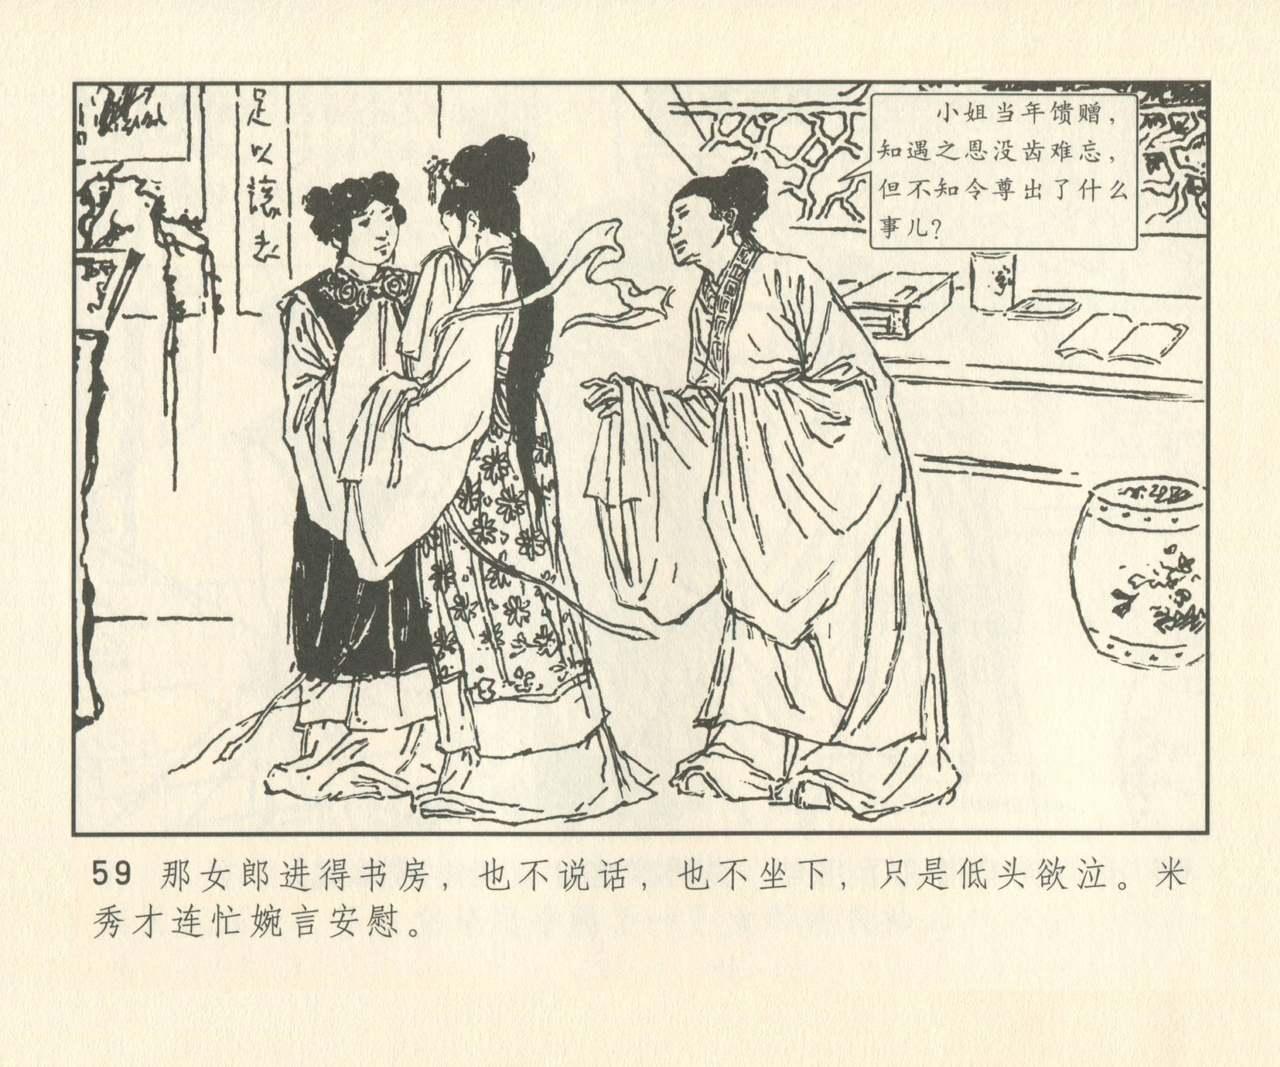 聊斋志异 张玮等绘 天津人民美术出版社 卷二十一 ~ 三十 187